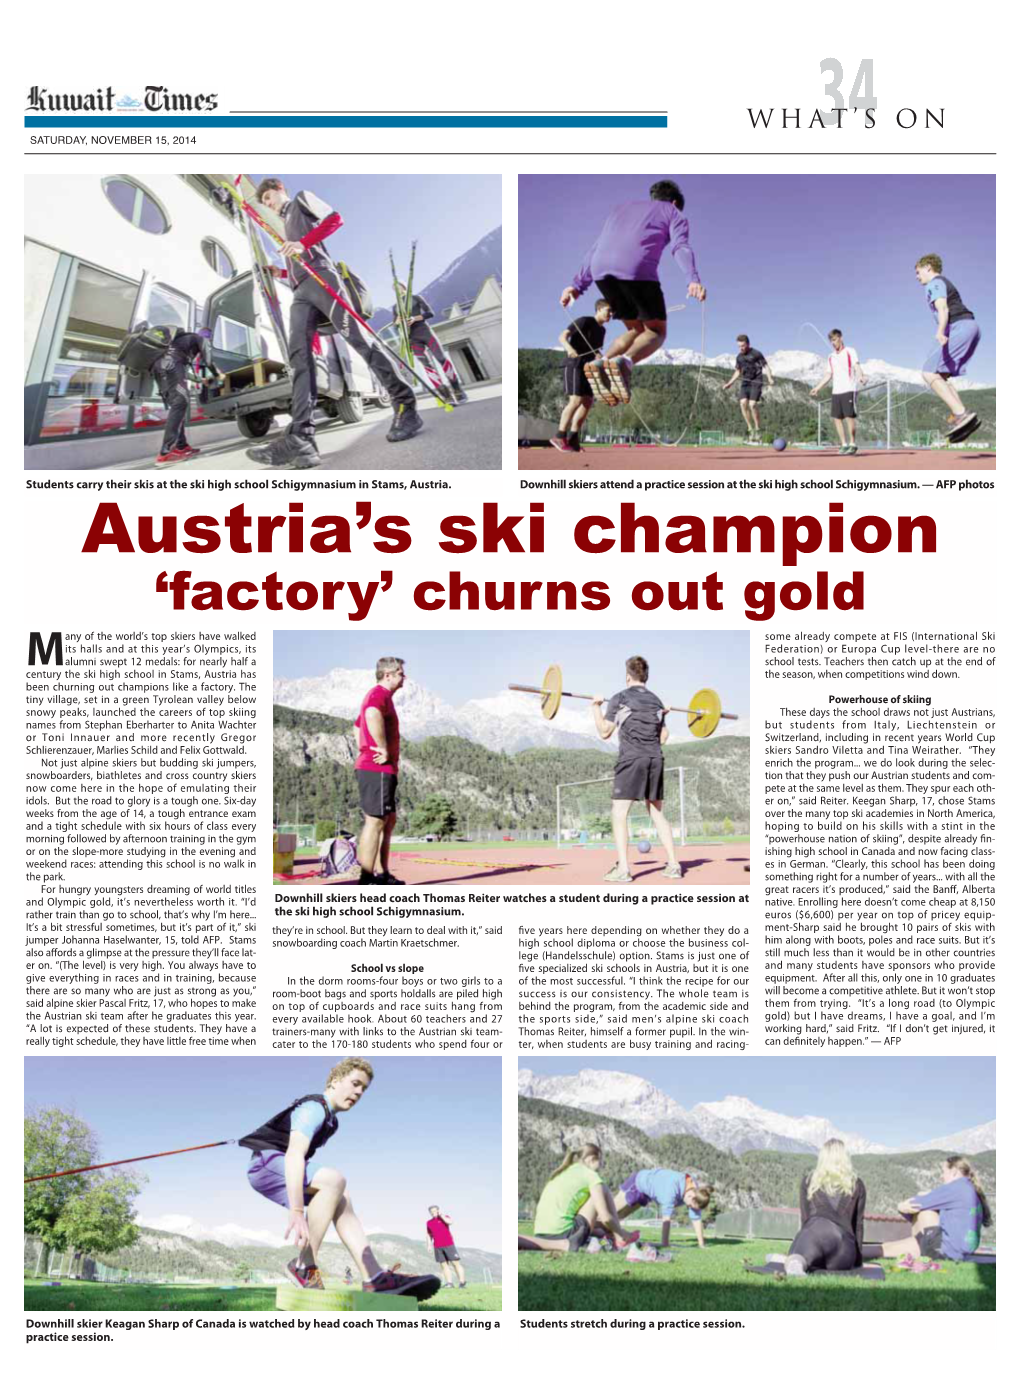 Austria's Ski Champion